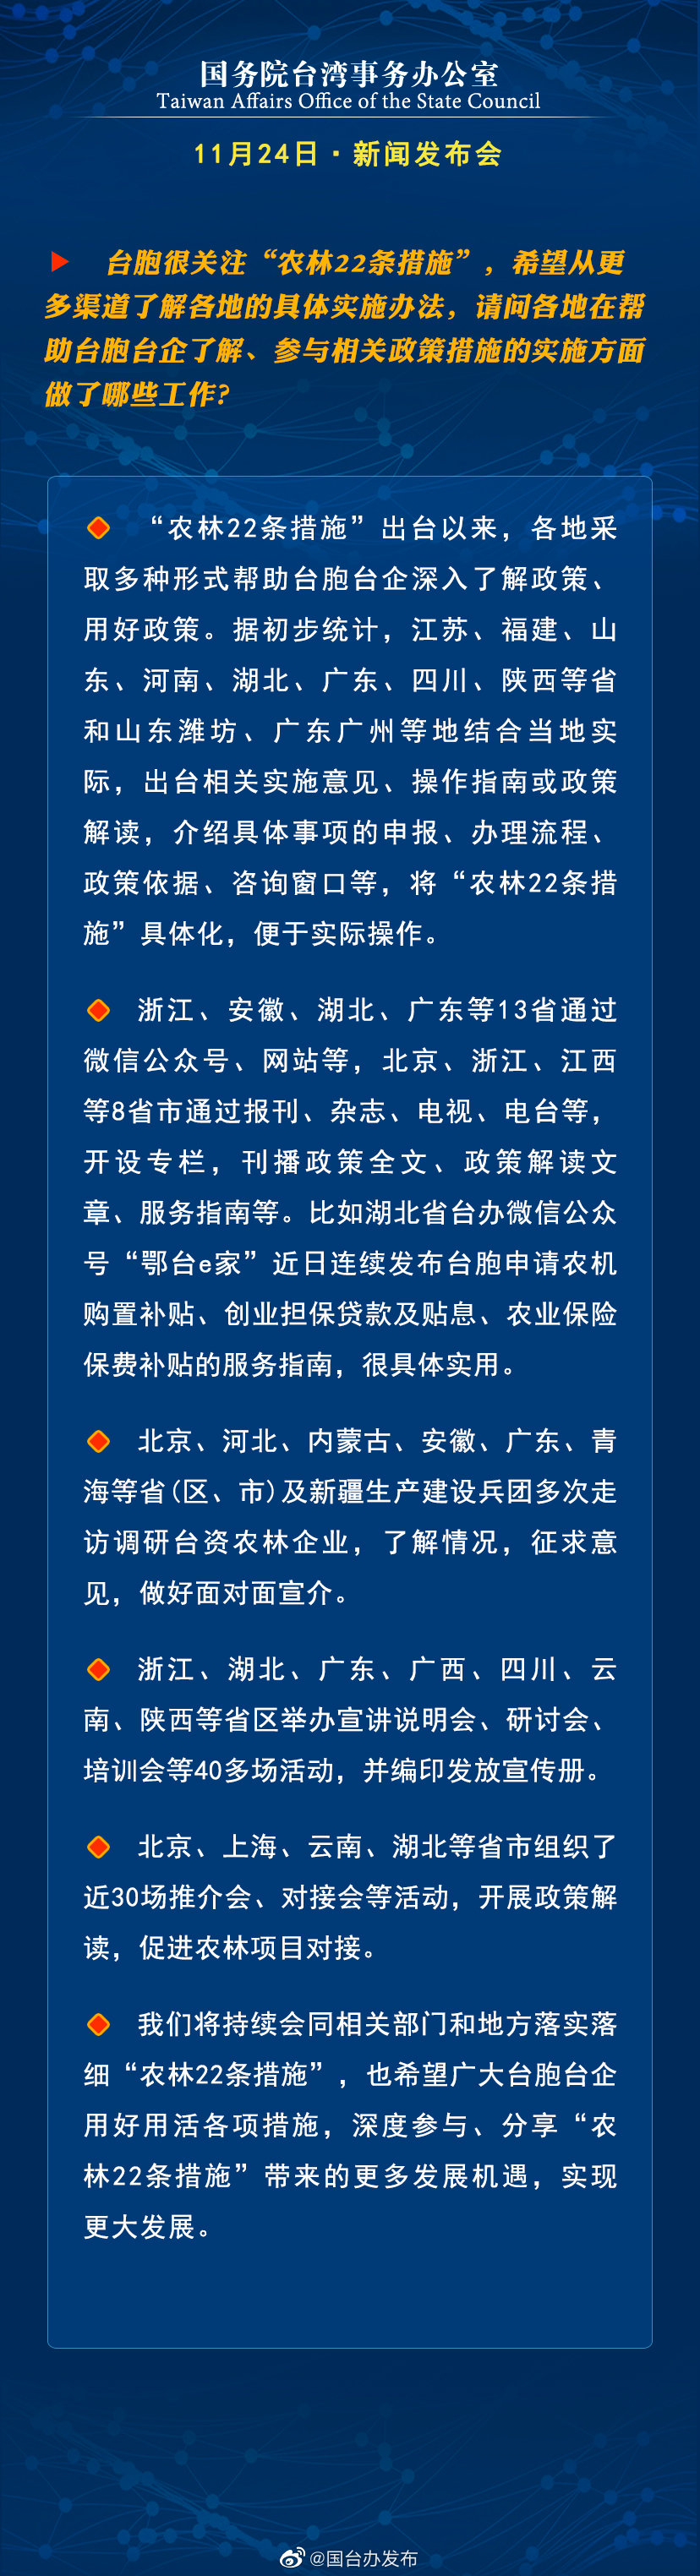 国务院台湾事务办公室11月24日·新闻发布会